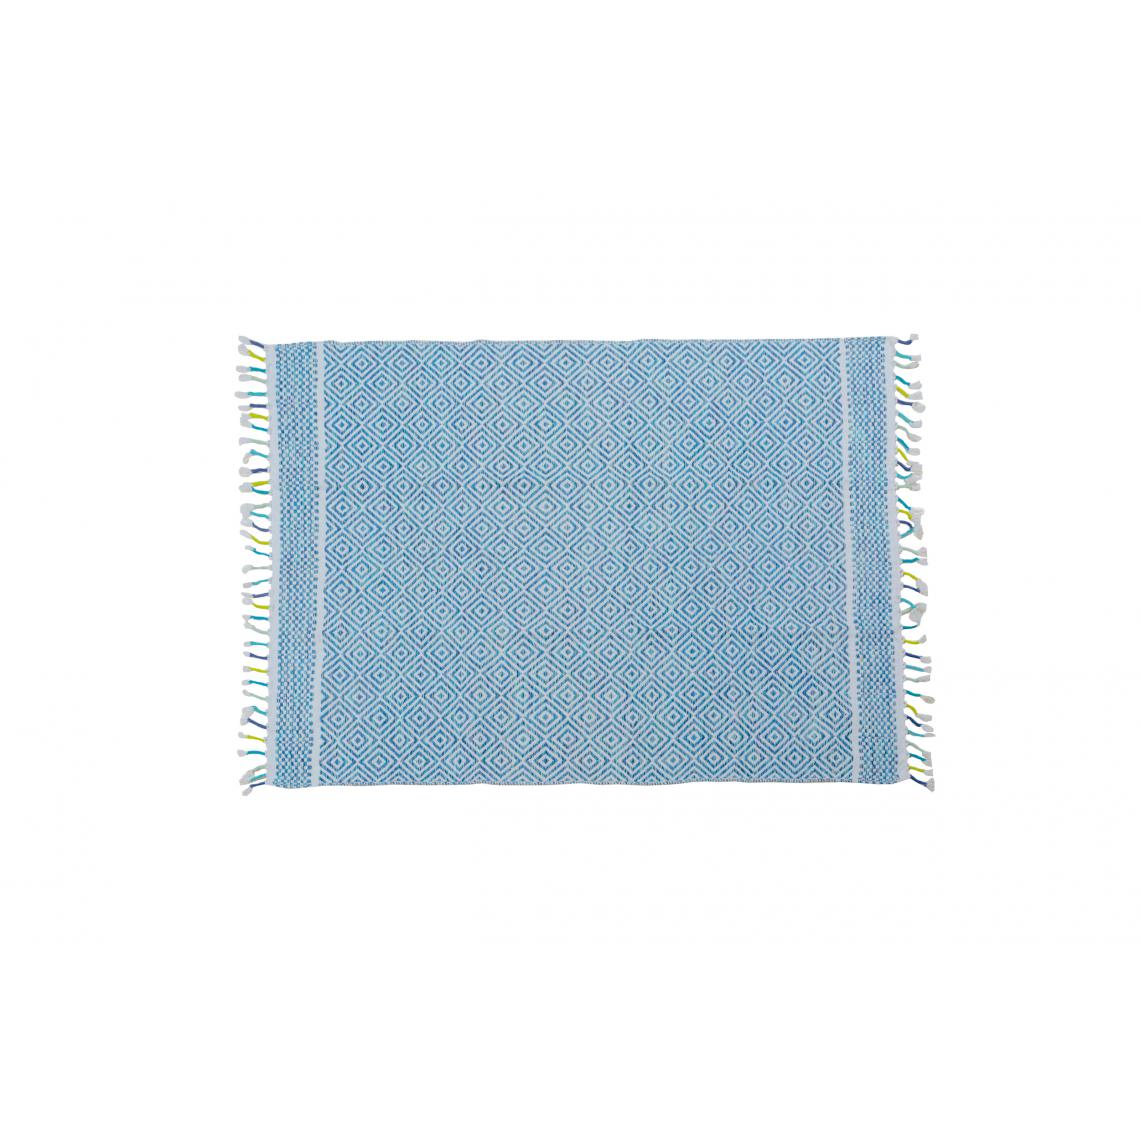 Alter - Tapis moderne Ontario, style kilim, 100% coton, bleu, 170x110cm - Tapis